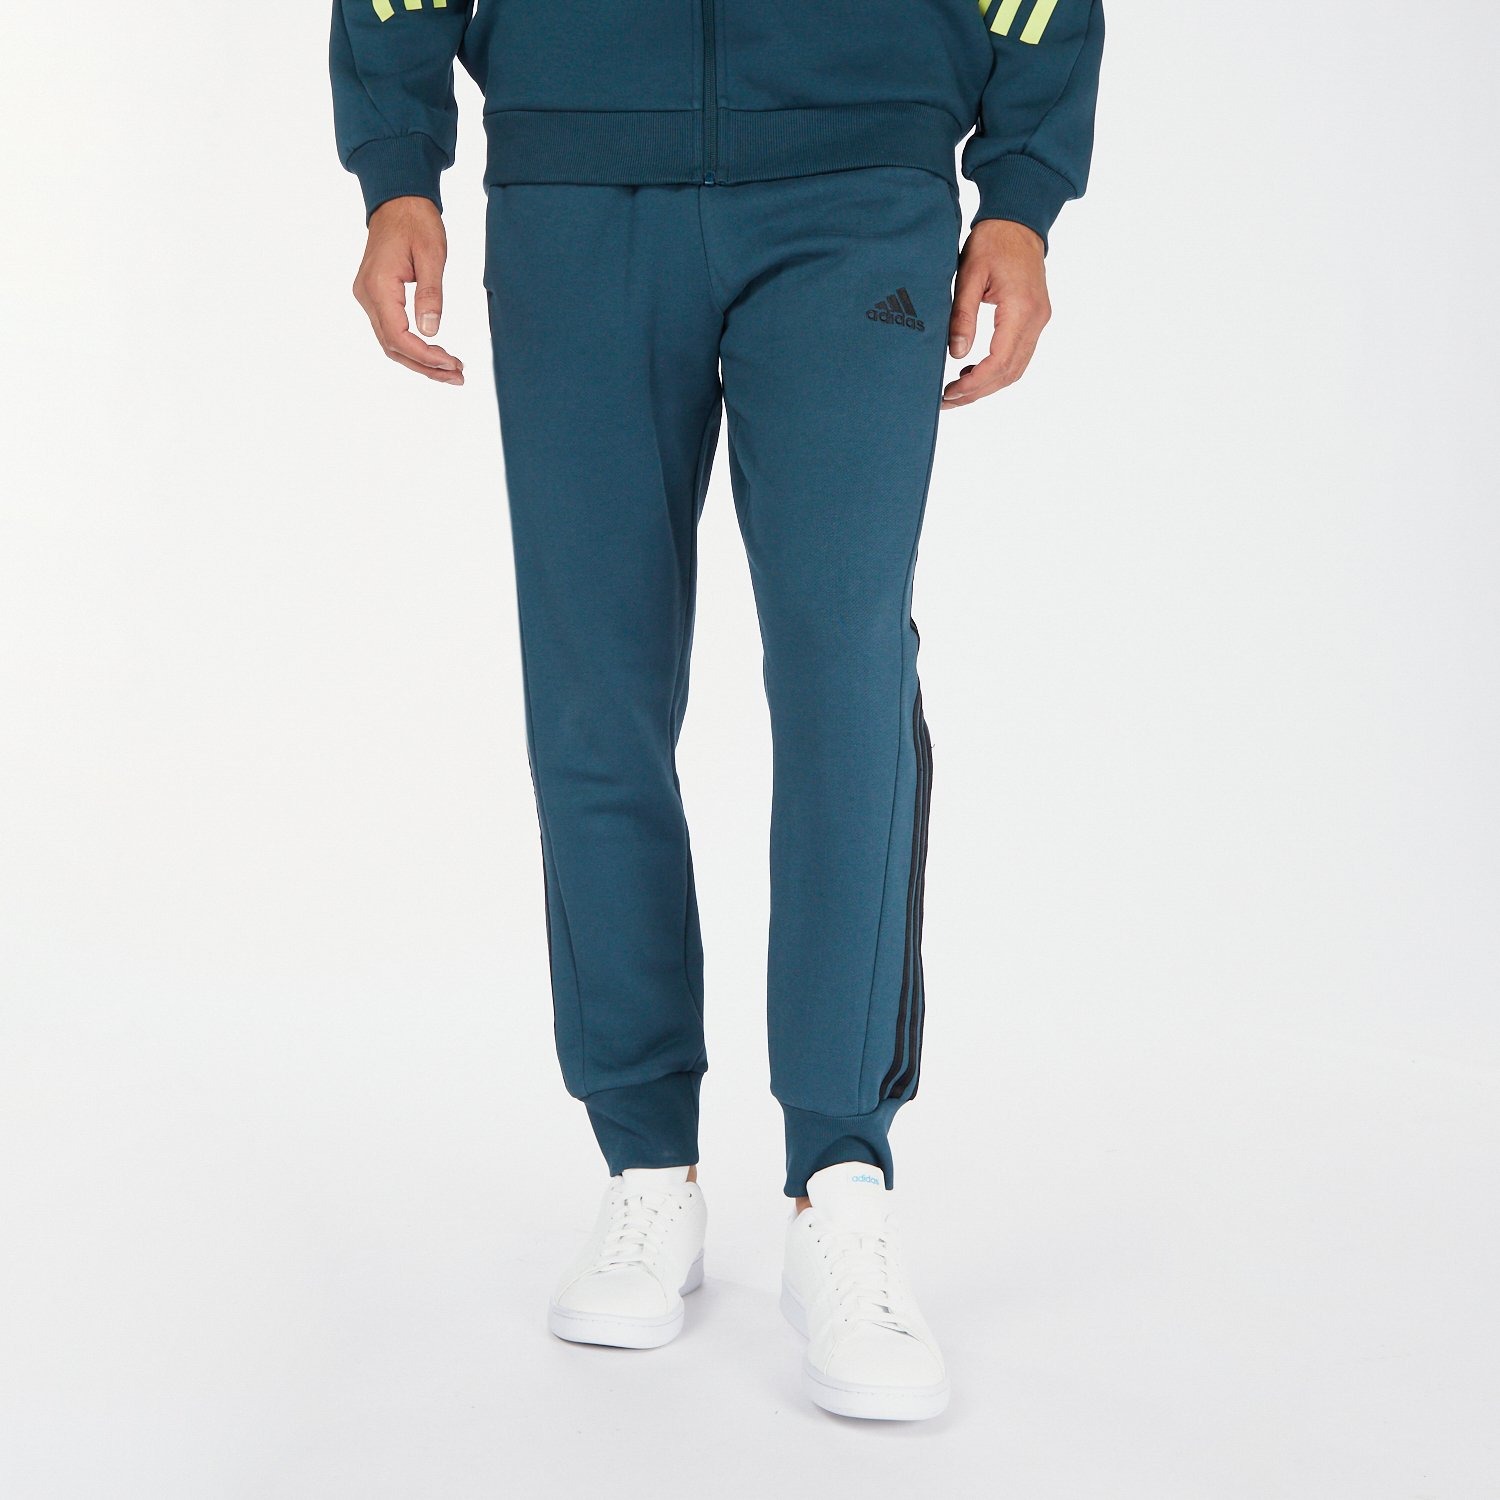 adidas Adidas 3-stripes joggingbroek blauw heren heren